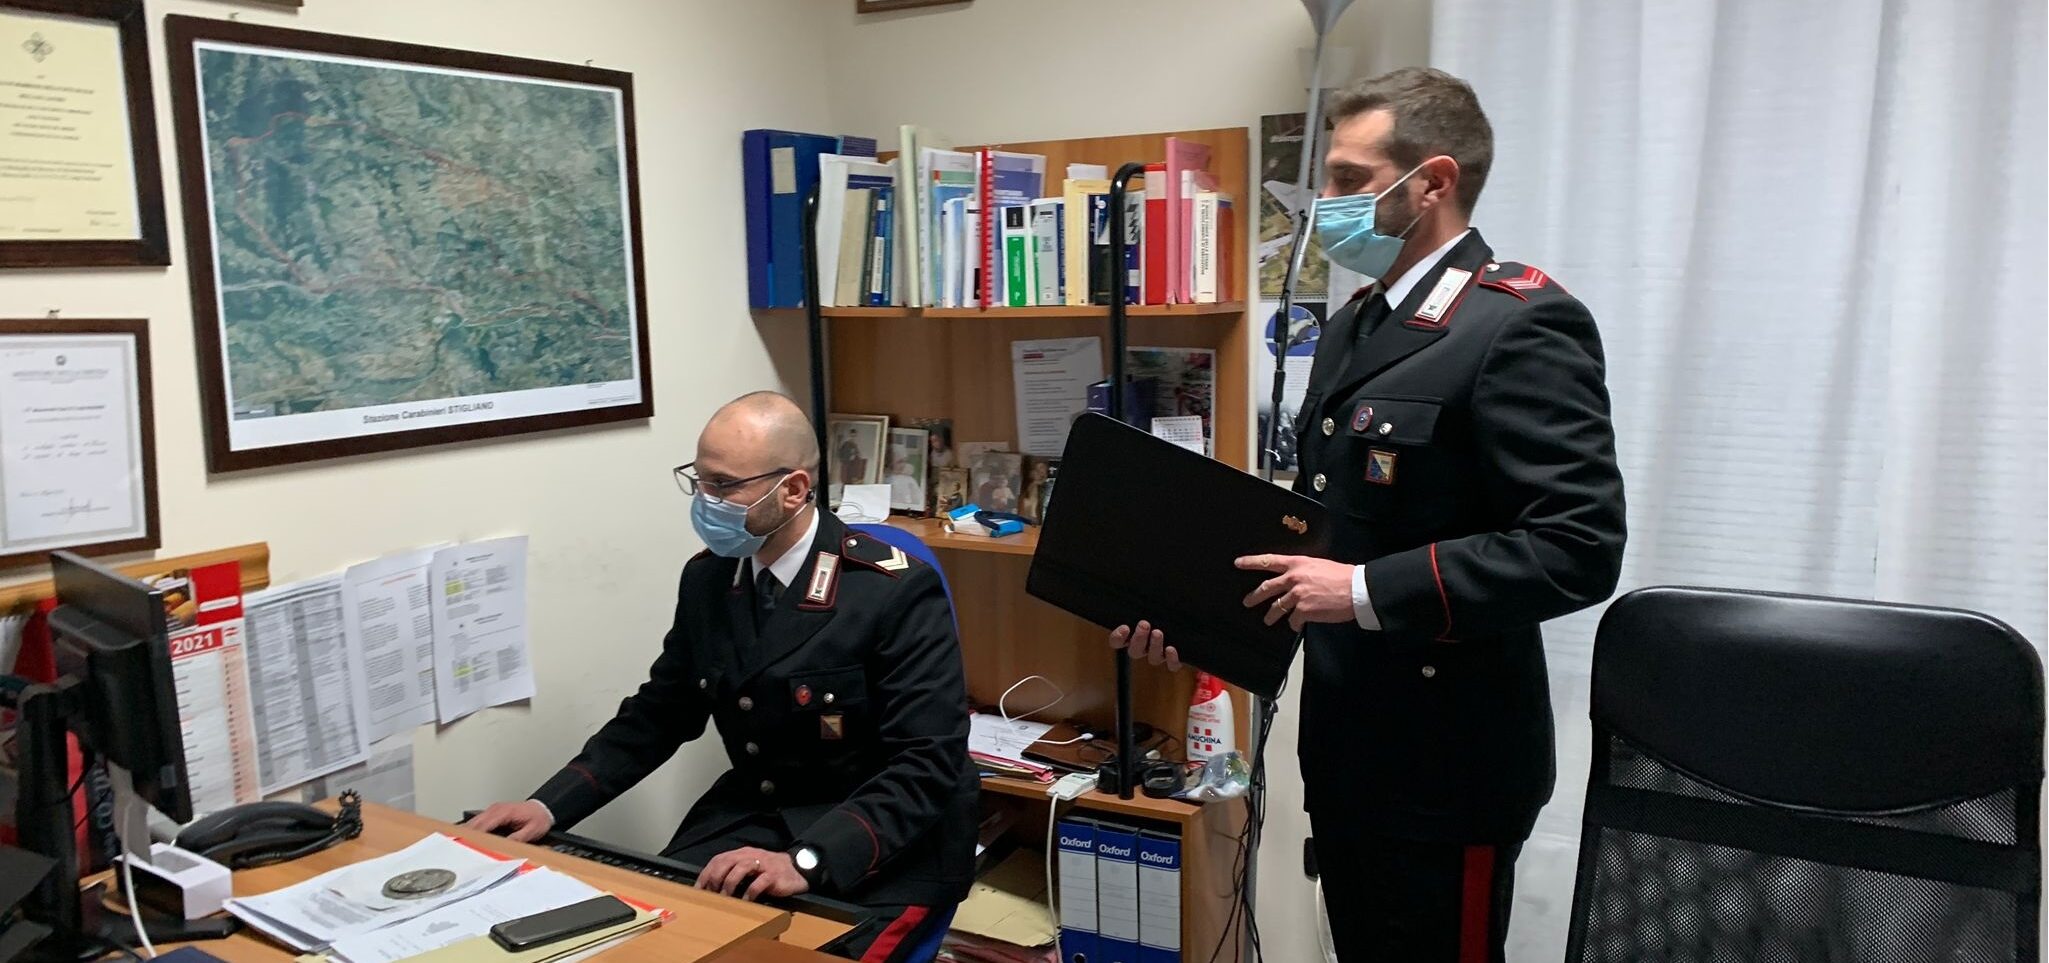 Ancora truffe online: tre persone denunciate dai Carabinieri di Stigliano in due distinti episodi di frode informatica